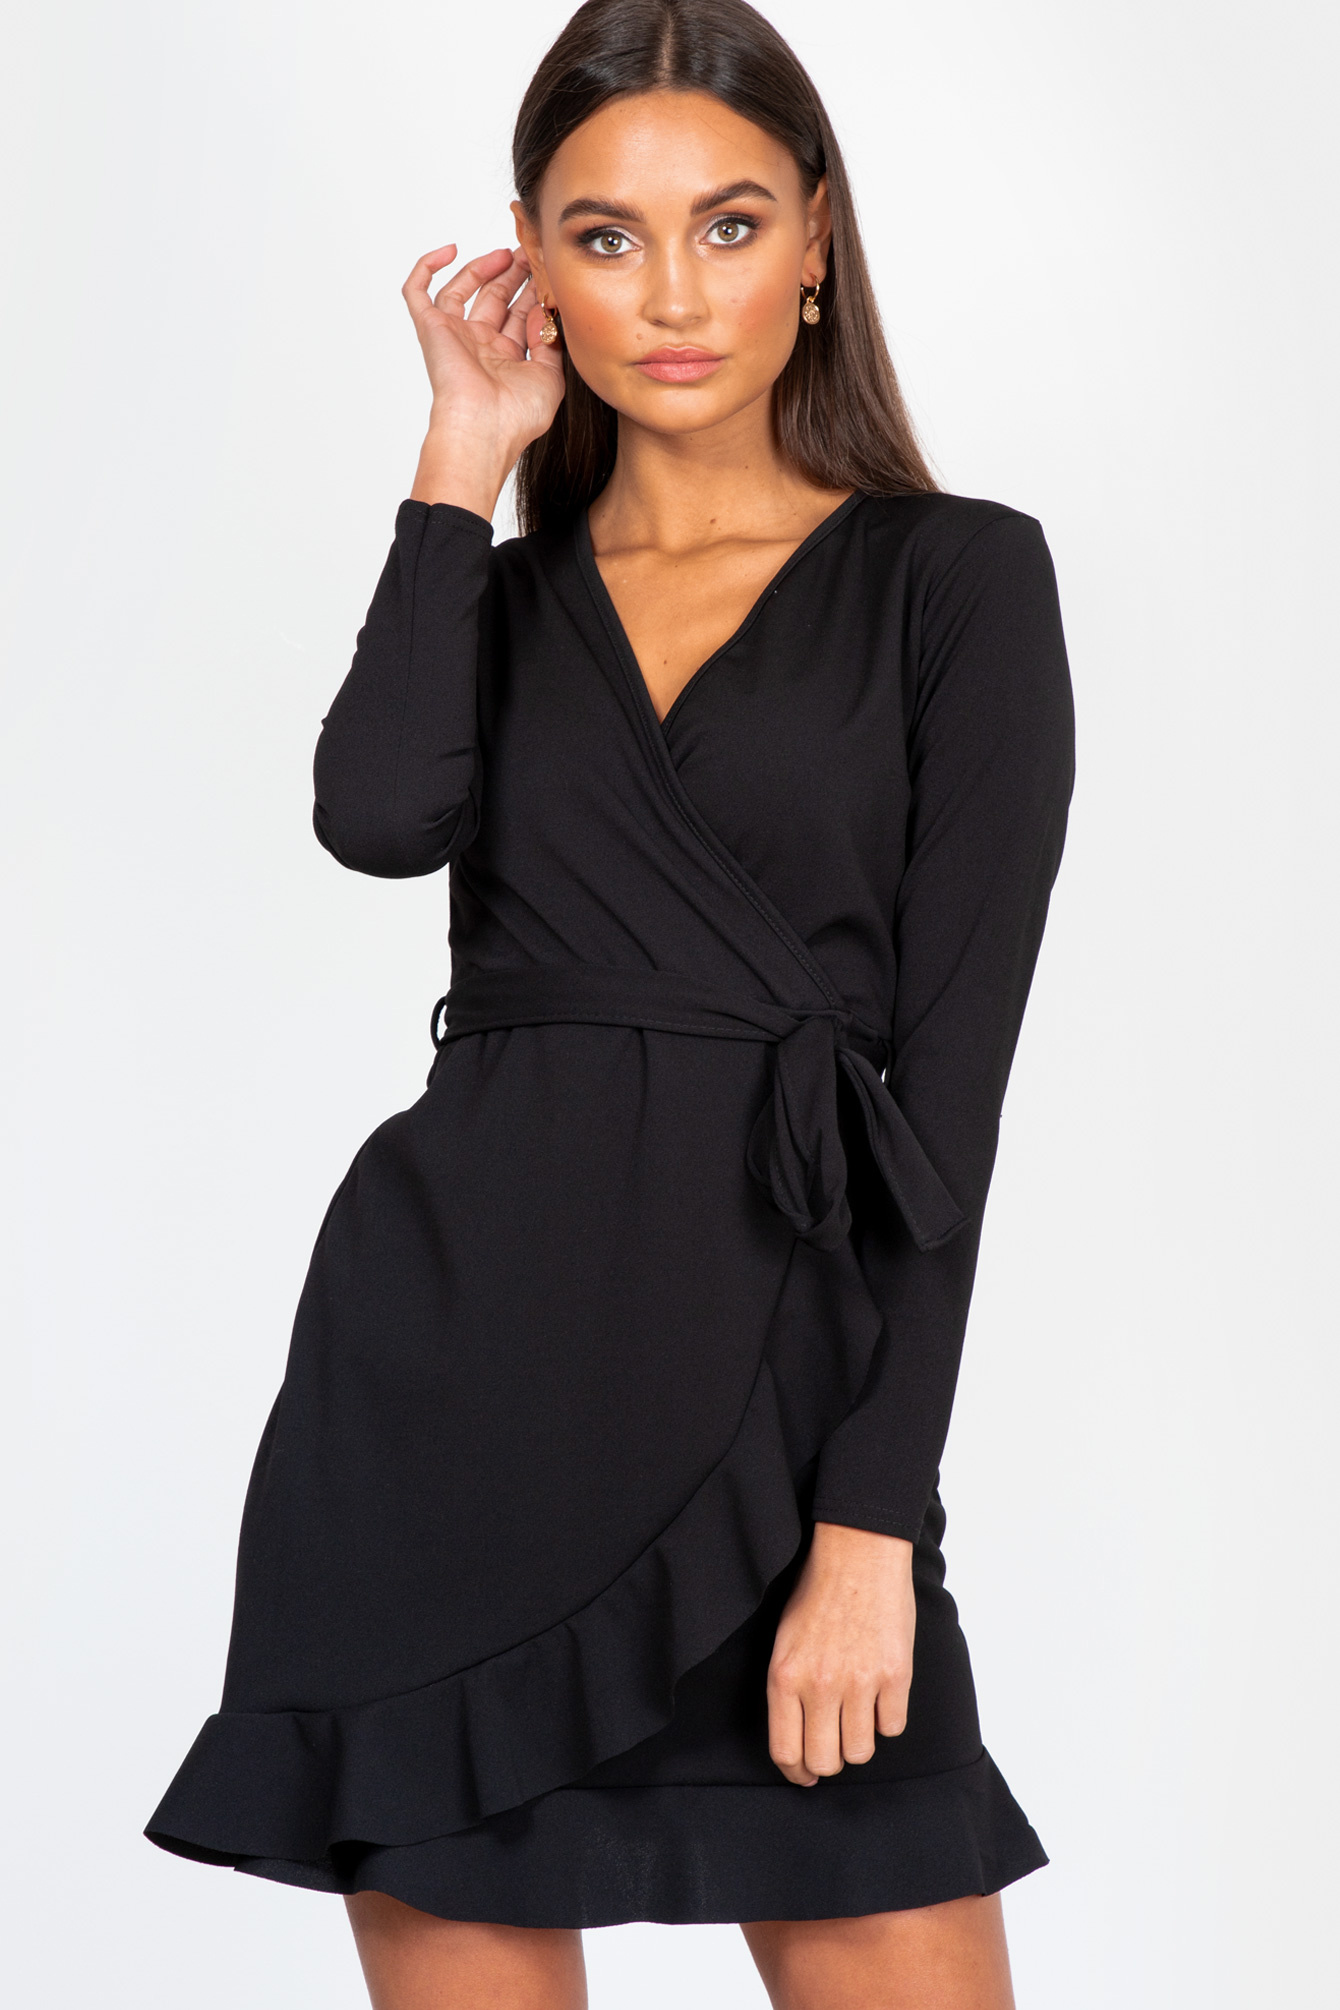 Onderhandelen scheiden Honderd jaar Zwart jurkje Selena I Flare jurk zwart - Famous Store